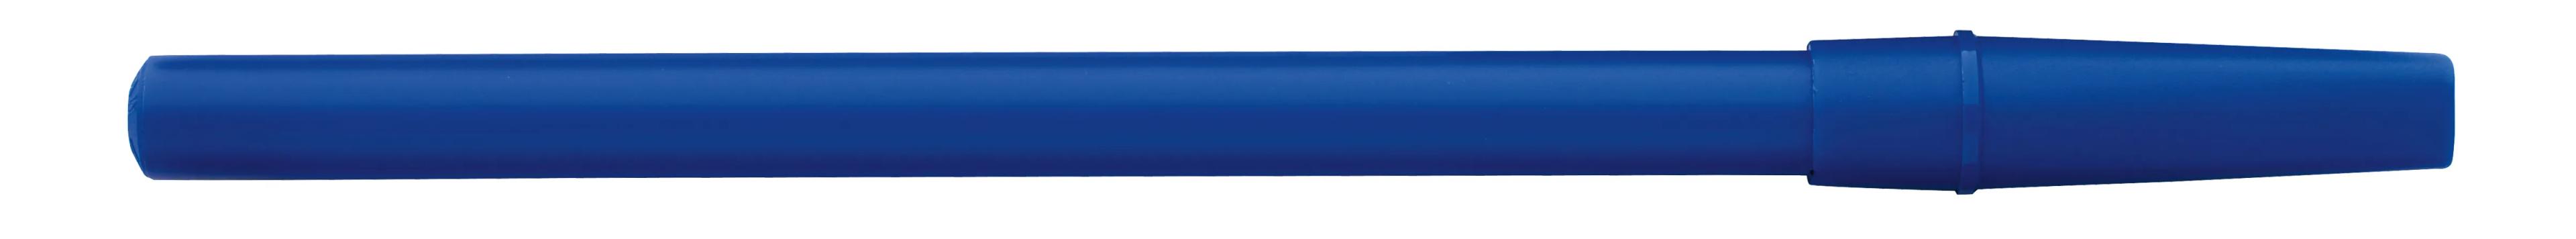 Corporate Promo Stick Pen 5 of 33